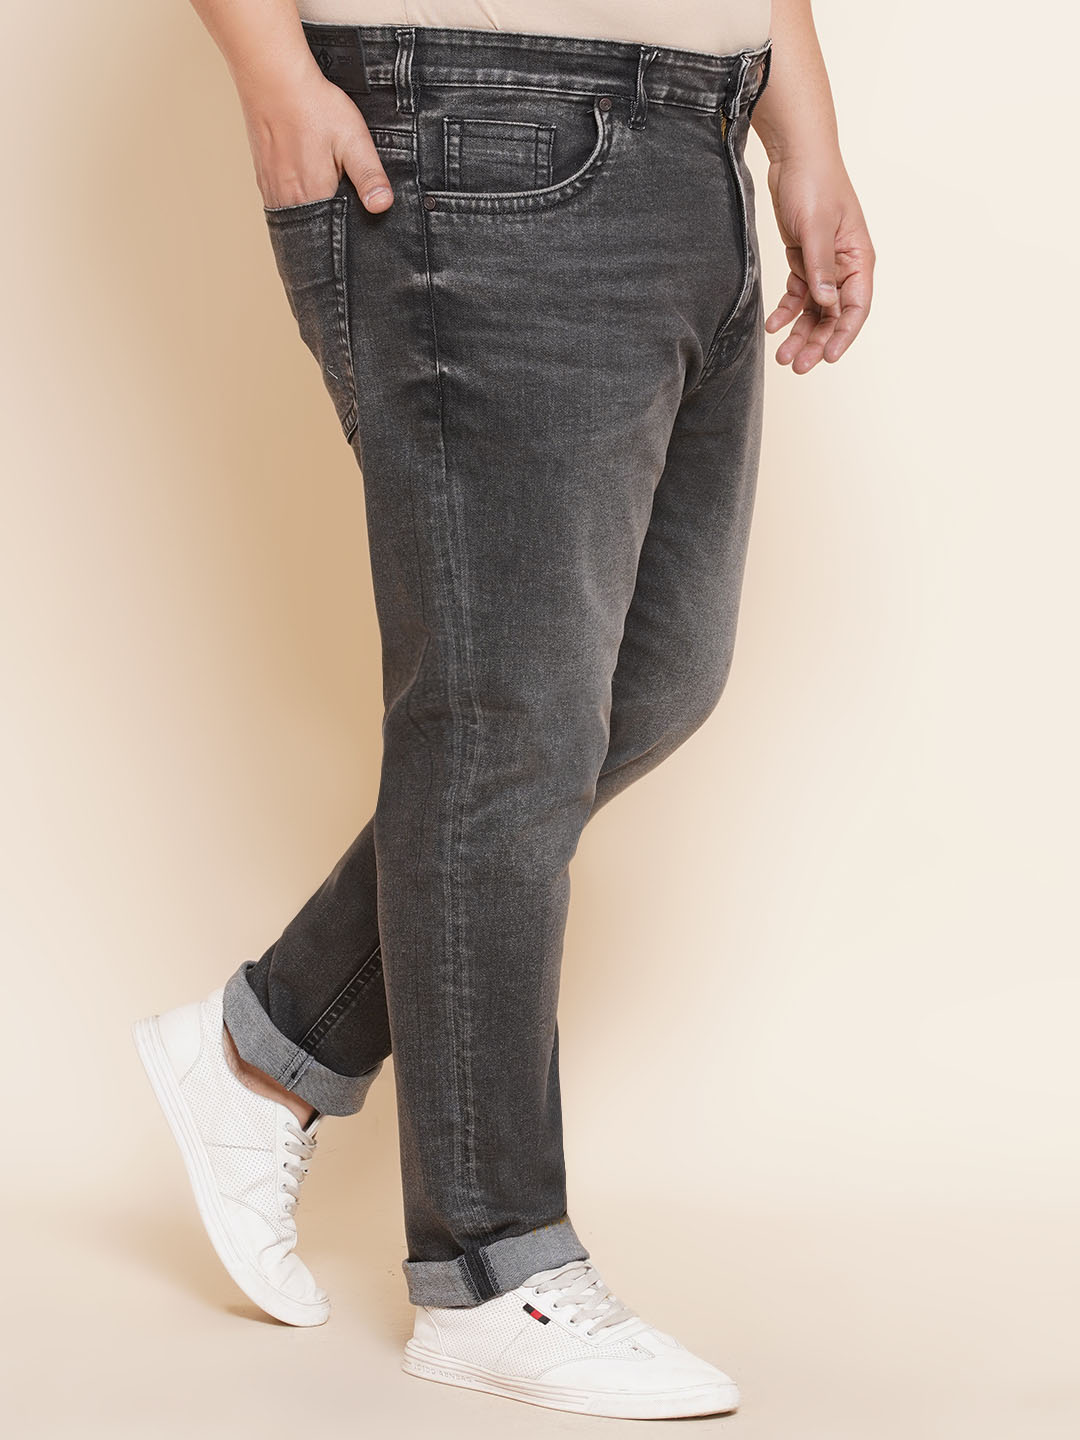 bottomwear/jeans/JPJ27016/jpj27016-3.jpg